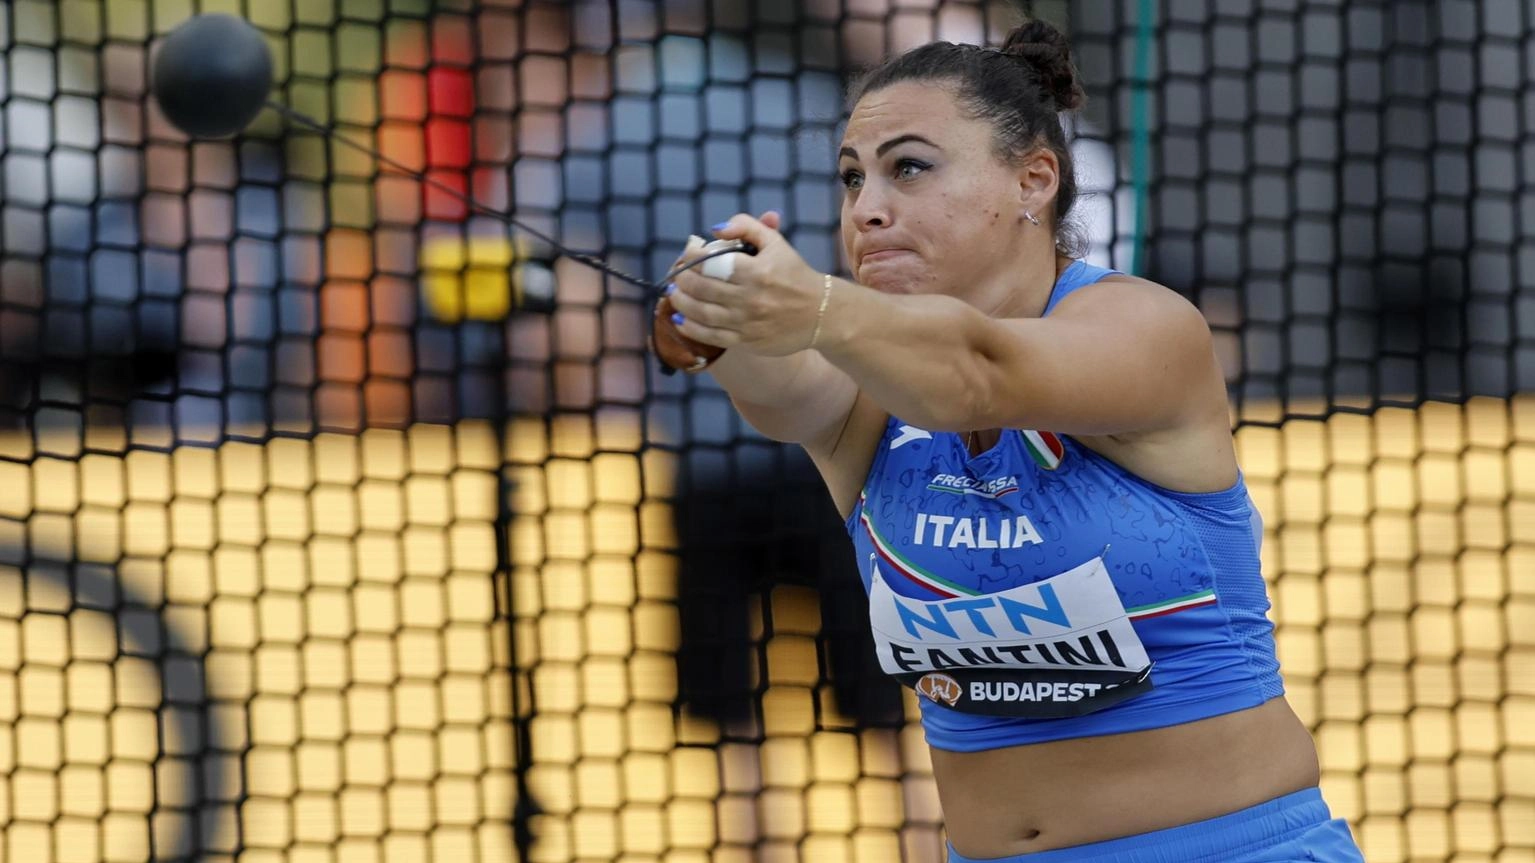 Europei atletica: oro Sara Fantini nel lancio del martello